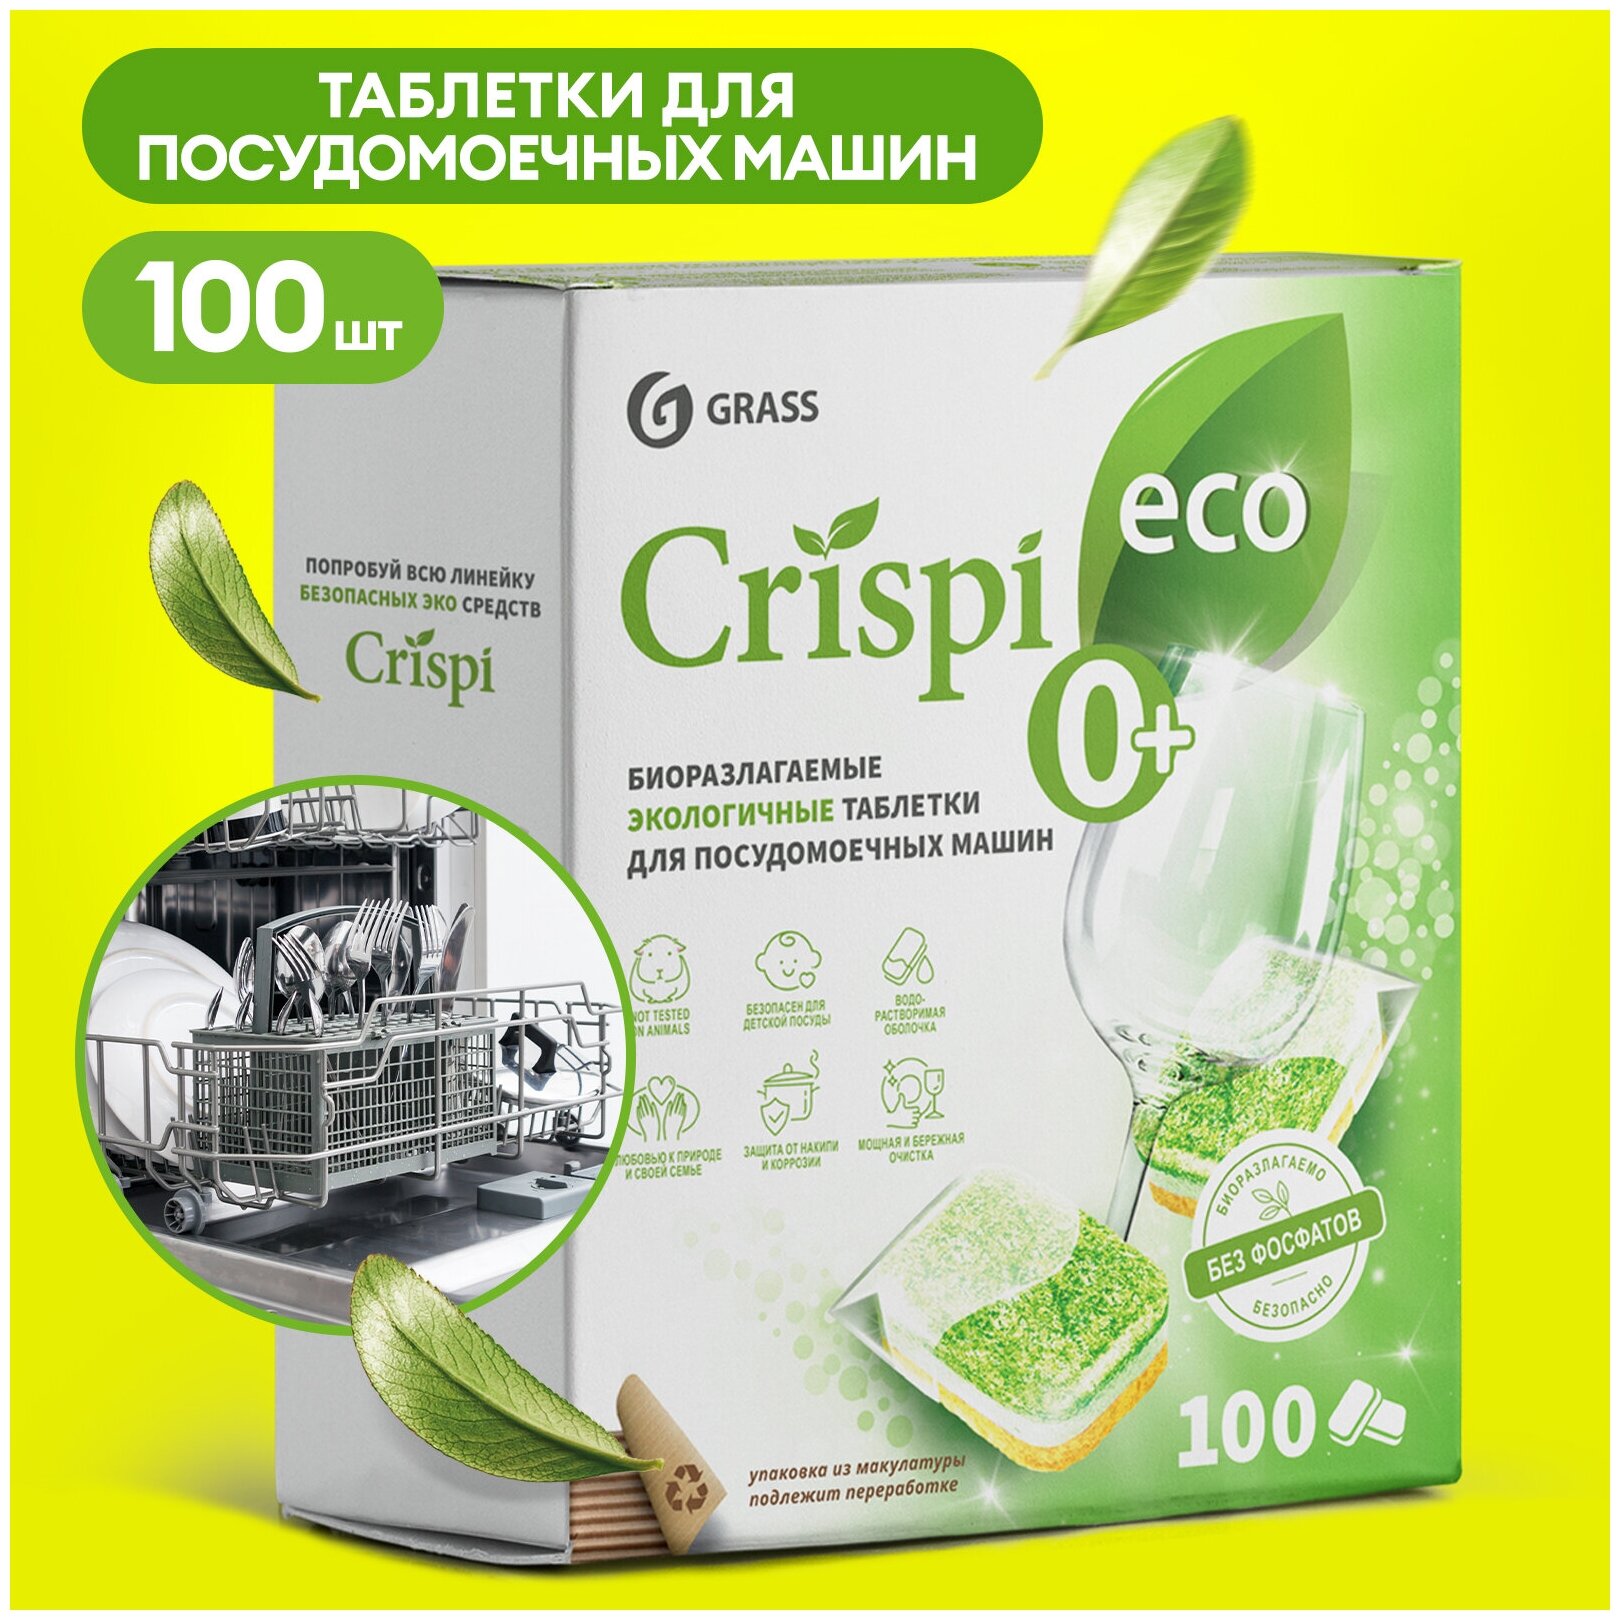 Таблетки для посудомоечной машины Grass Crispi 100шт, бесфосфатные, биоразлагаемые, экологичные таблетки для посудомойки, моющее средство для посуды